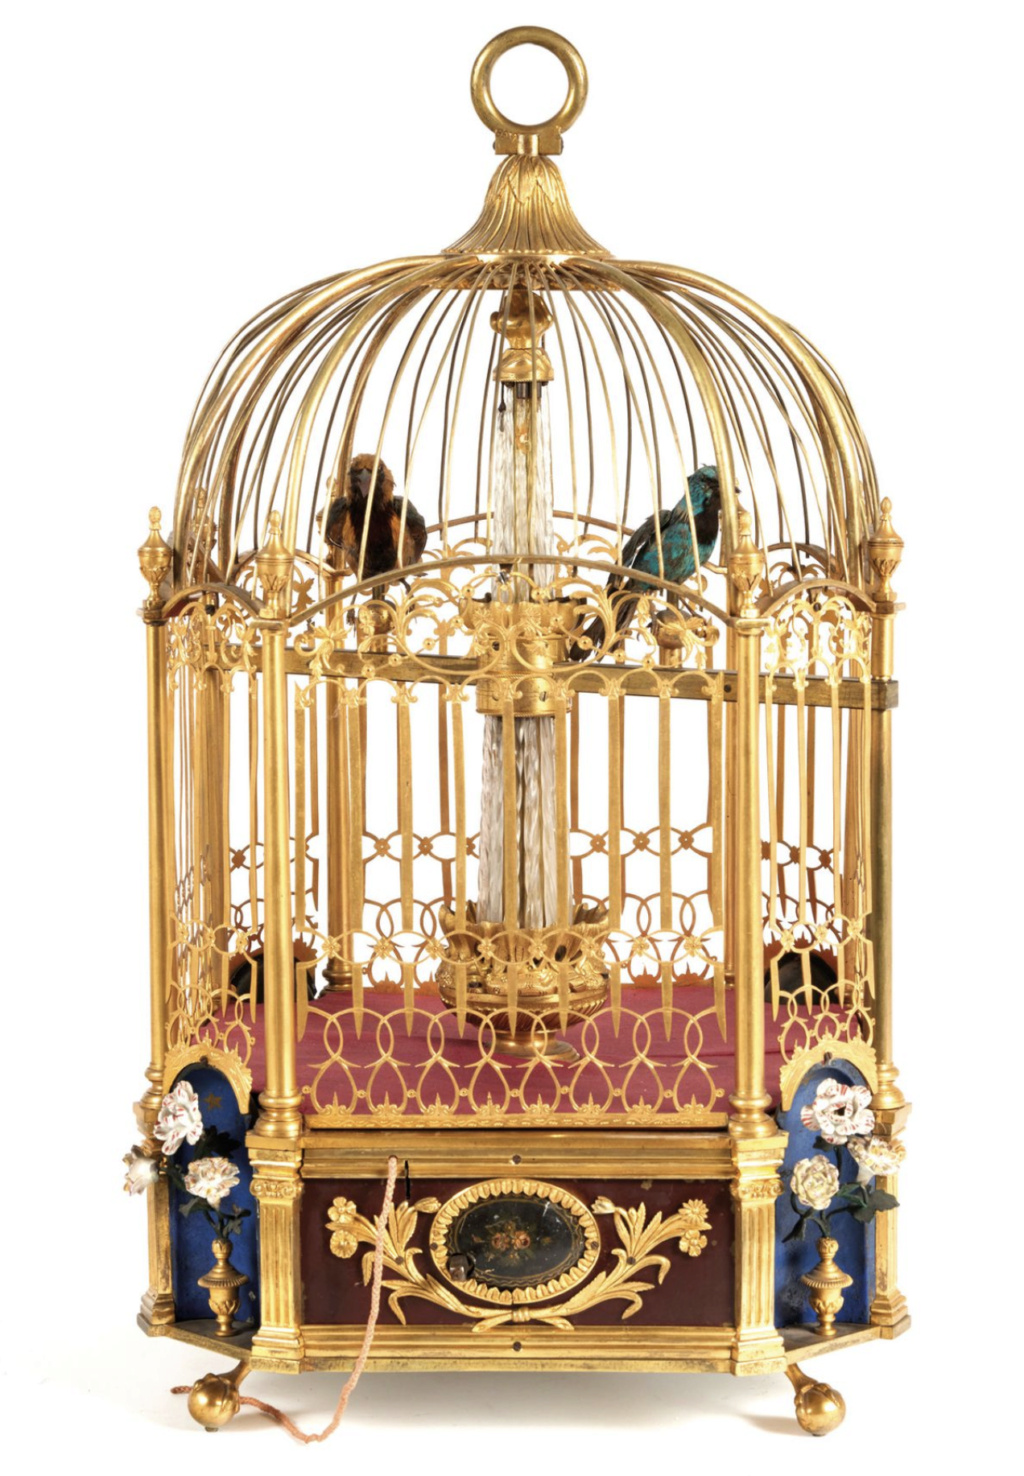 Les pendules cages et oiseaux automates du XVIIIe siècle - Page 2 Capt4520